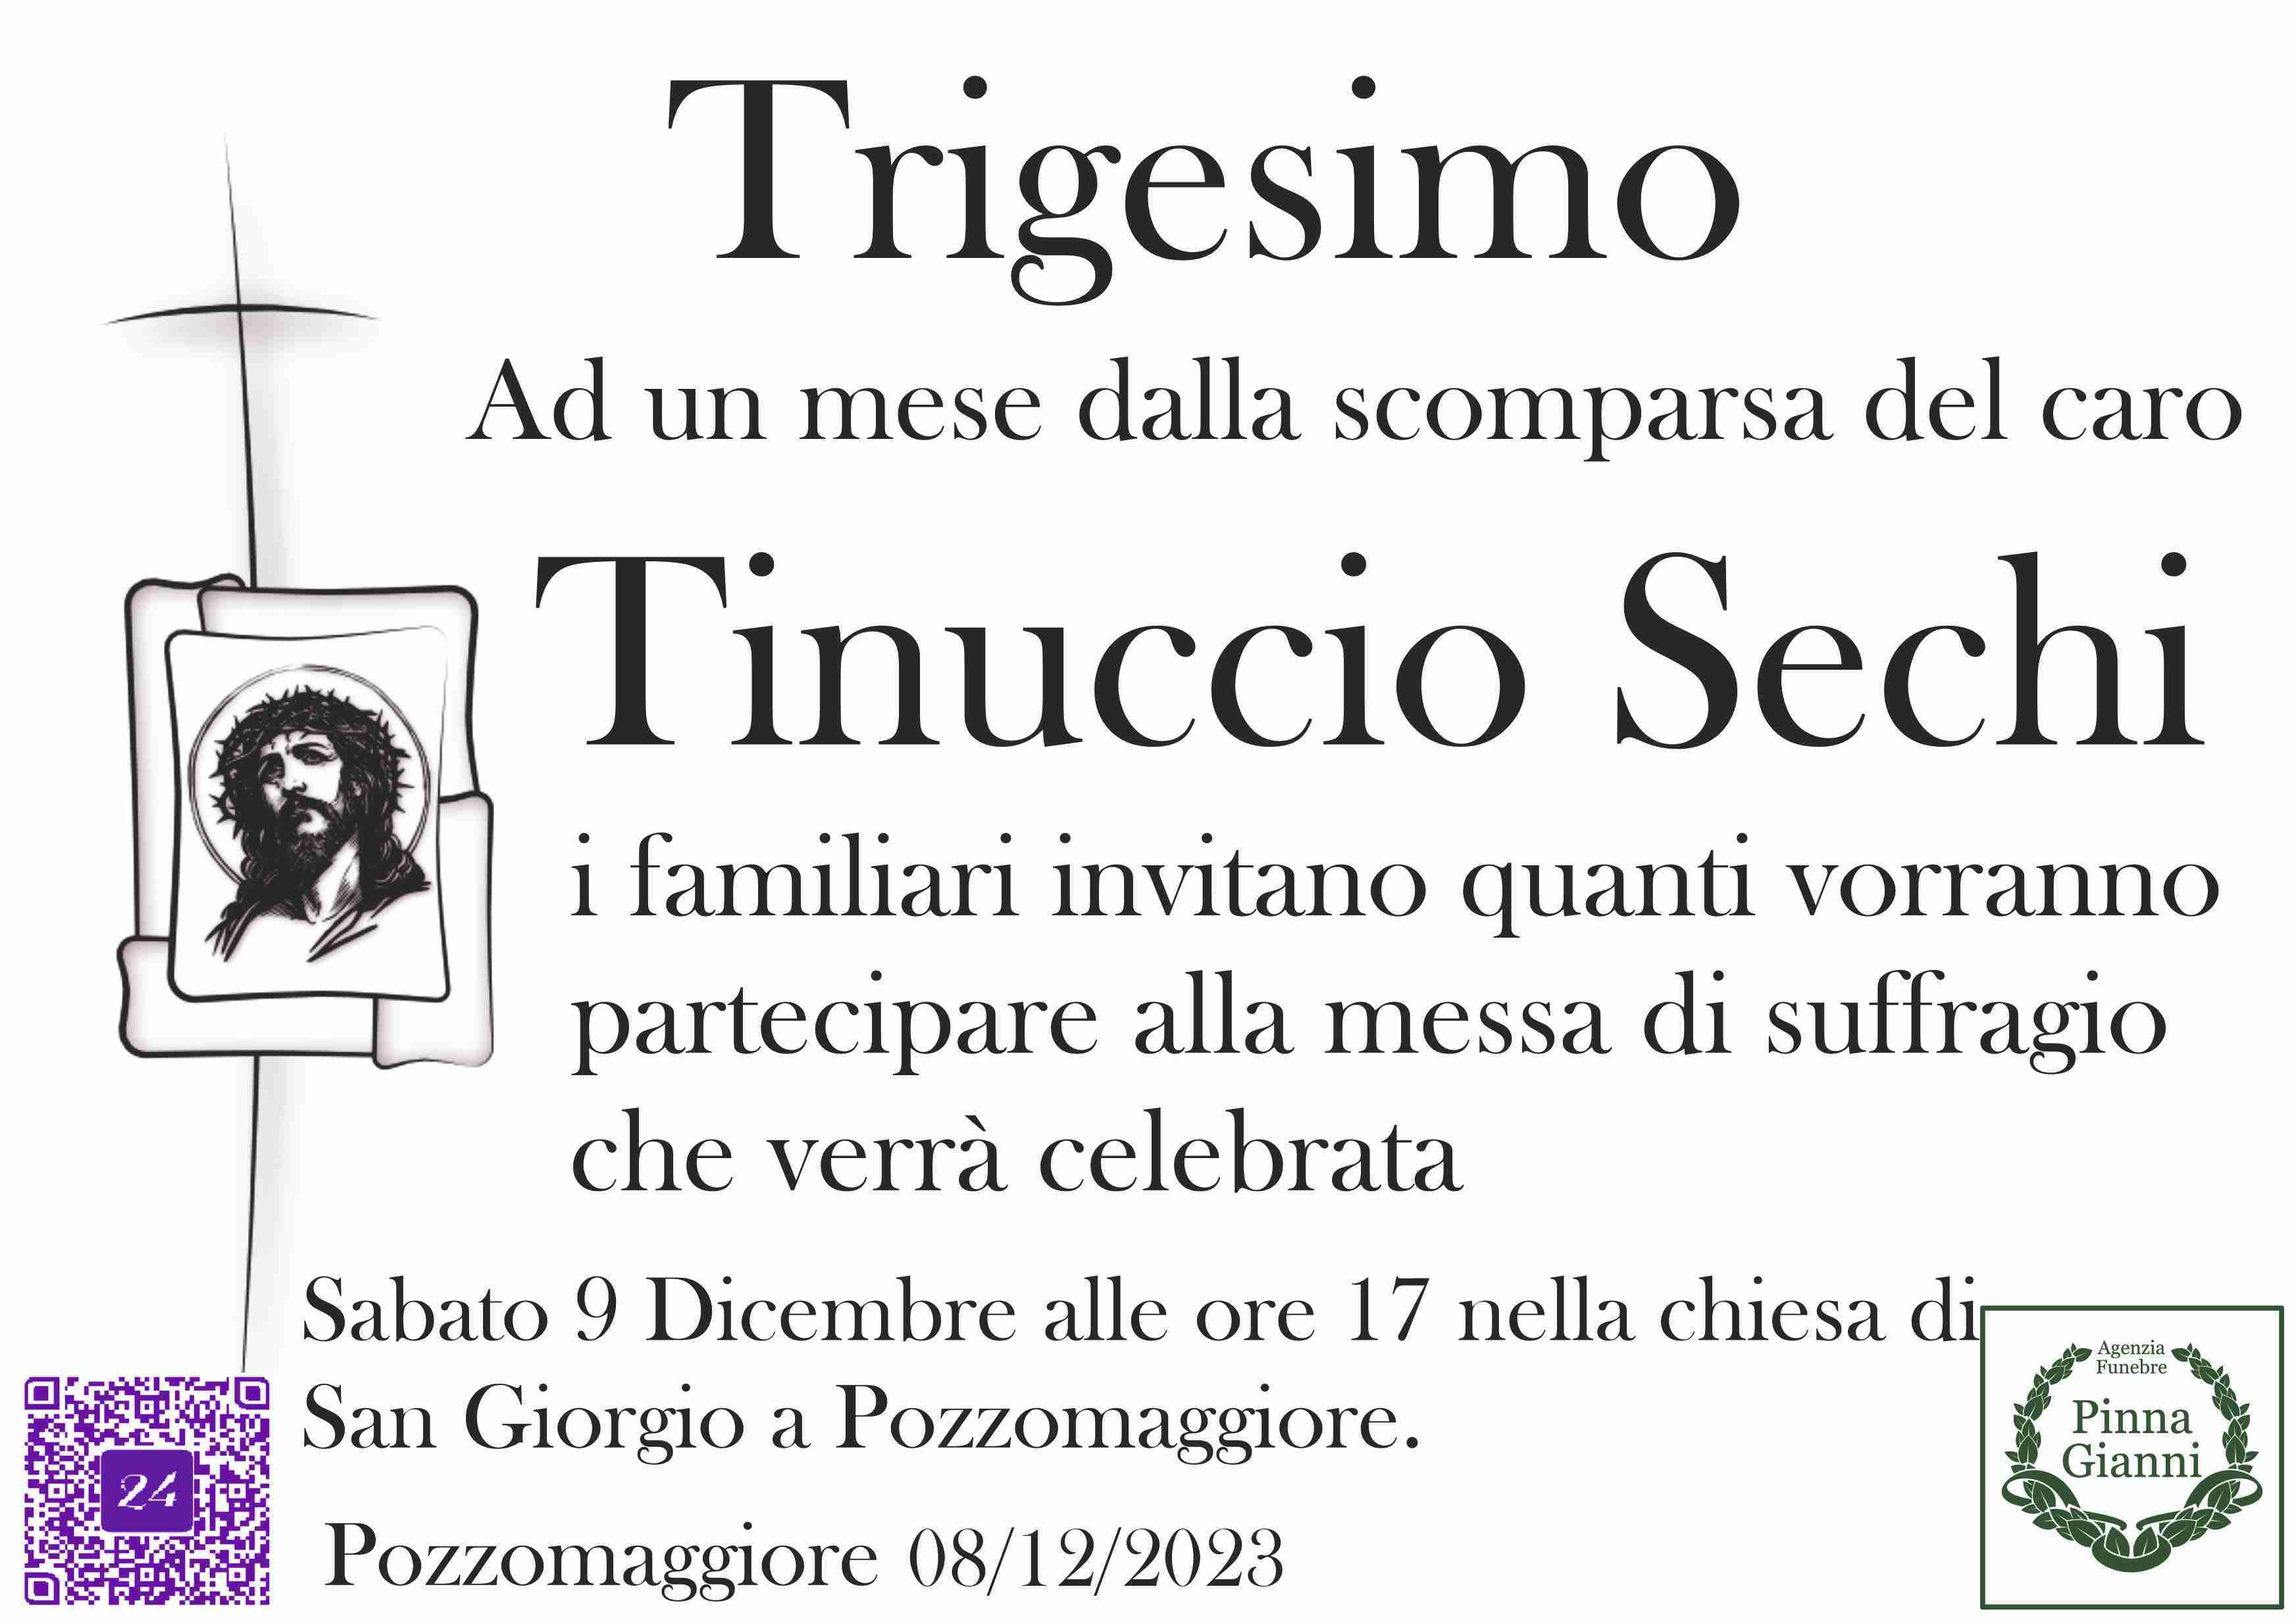 Tinuccio Sechi